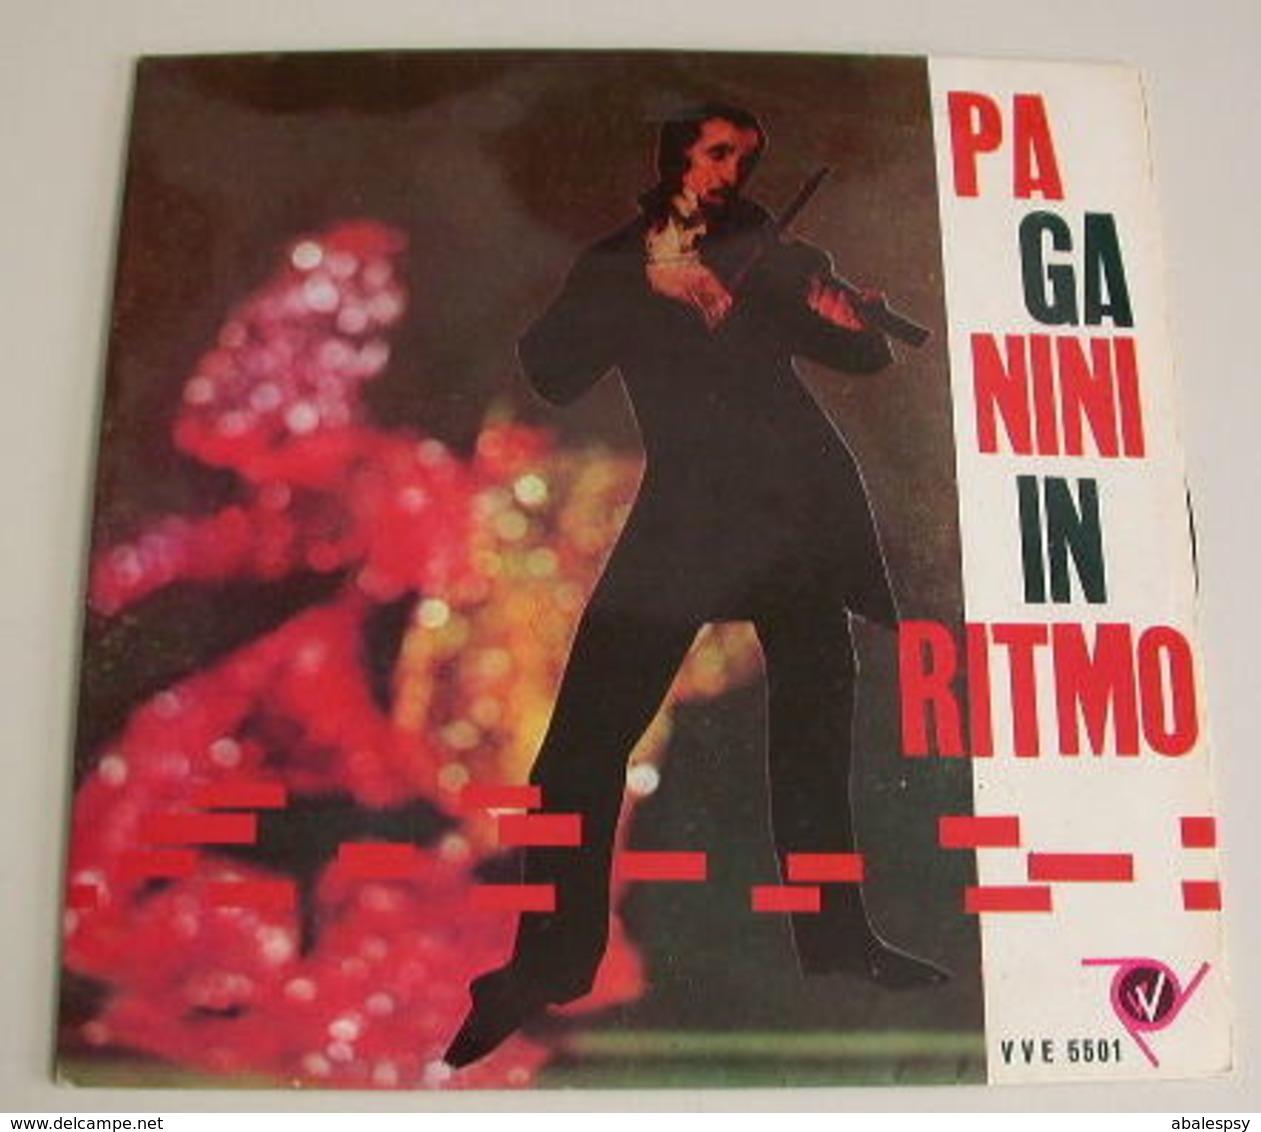 Armando Sciascia 45t Ep Paganini In Ritmo Capriccio(Italy VVE 5501) EX NM - Classical